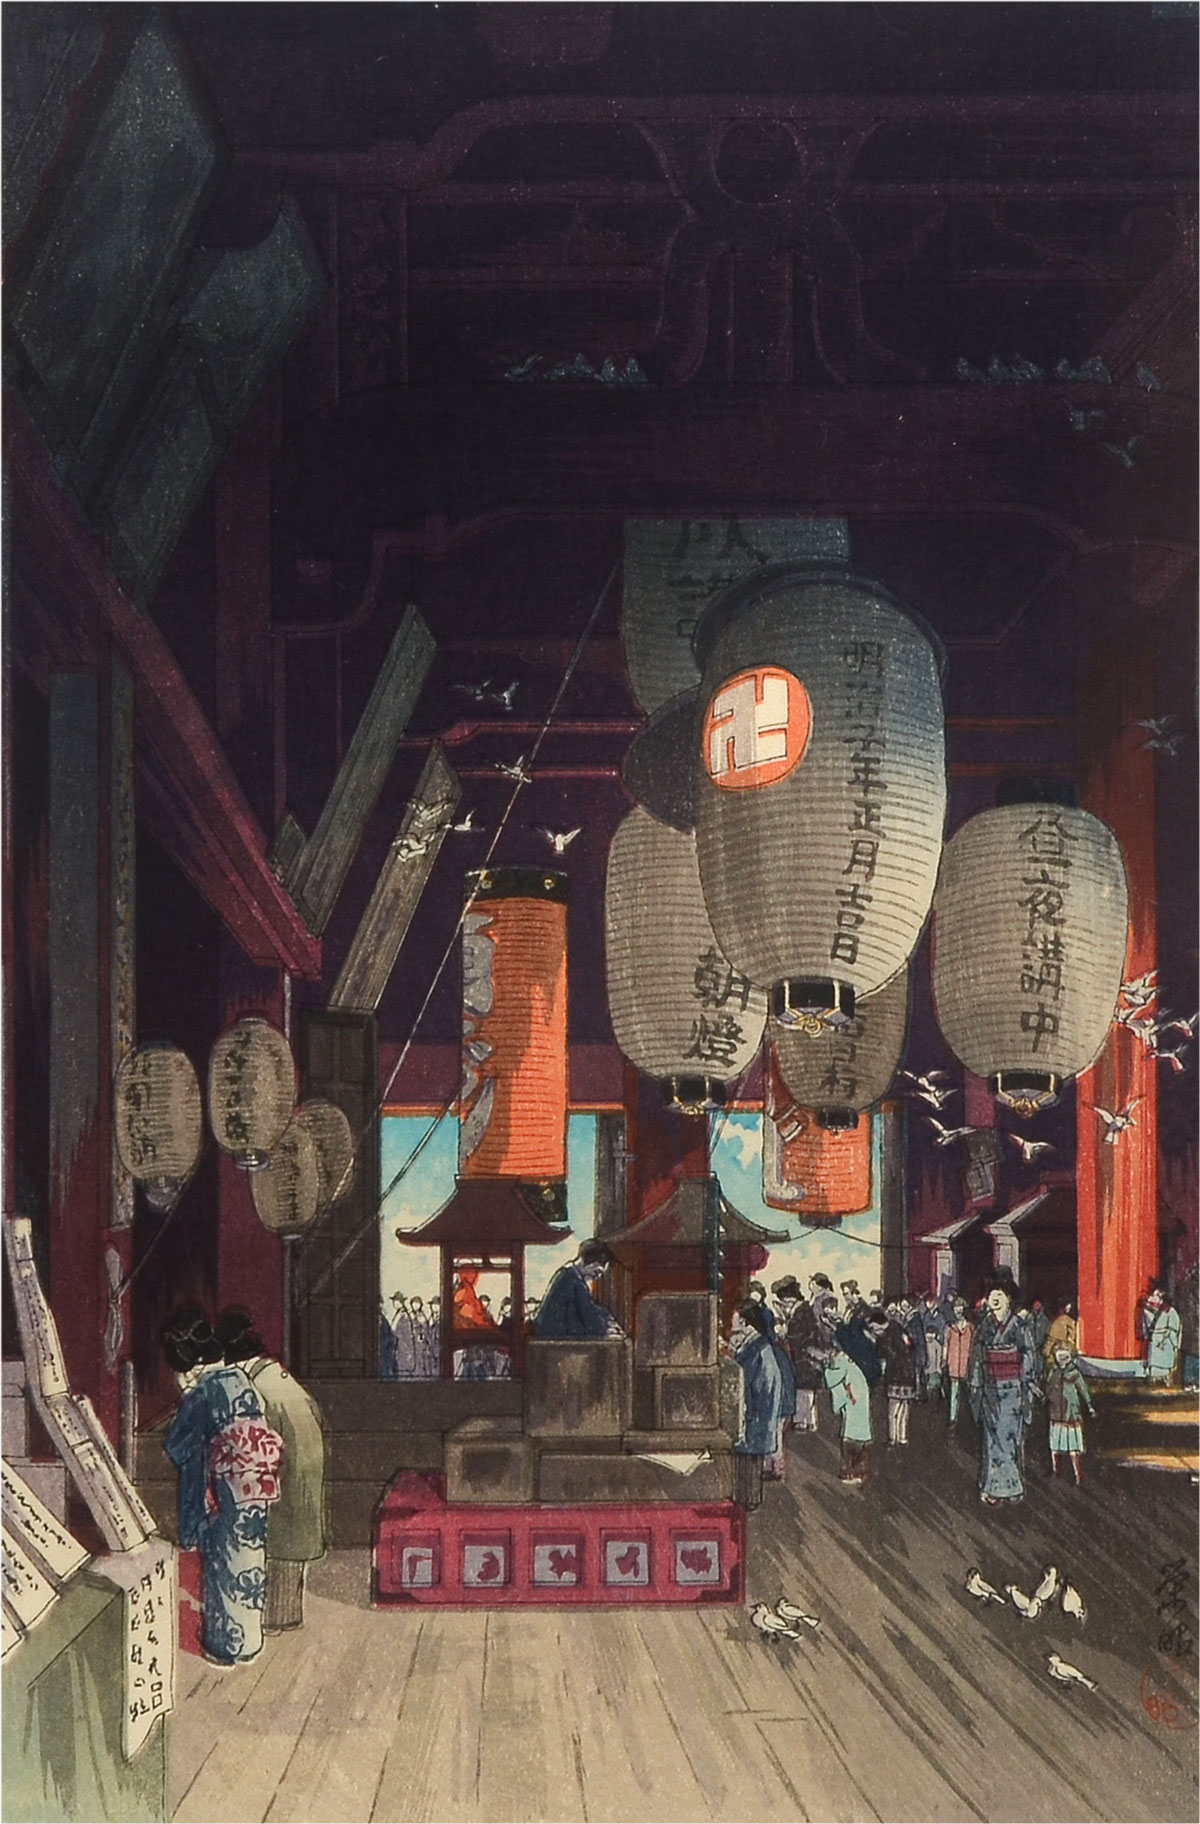 NARAZAKI, Eisho, (Japanese, 1894-1936):